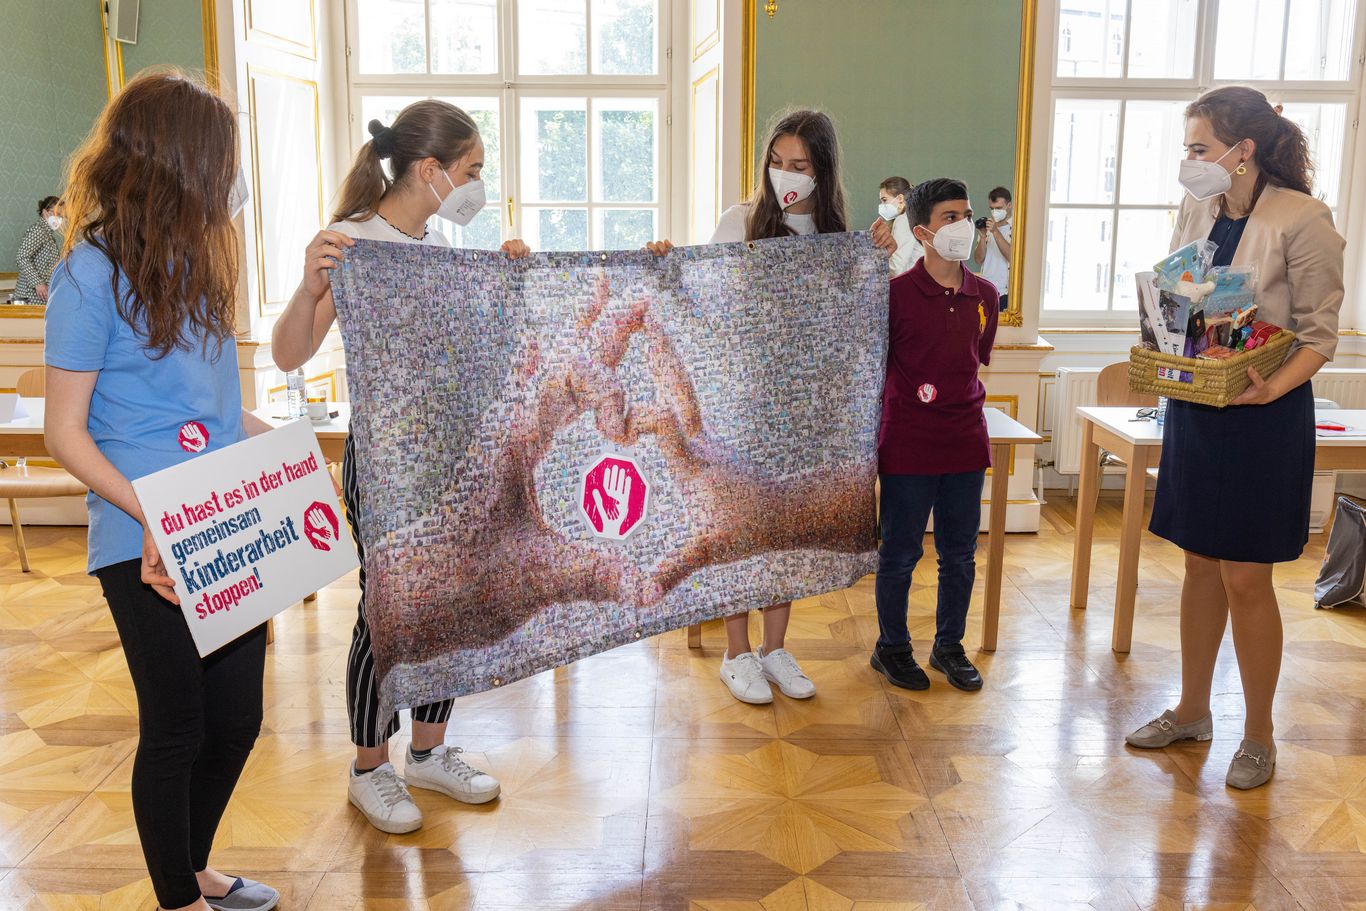 Kinder der Aktion Kinderarbeit stoppen überreichen der Bundesministerin Alma Zadić das Transparent des Mosaik aus den symbolischen Fotos der Hände gegen Kinderarbeit 